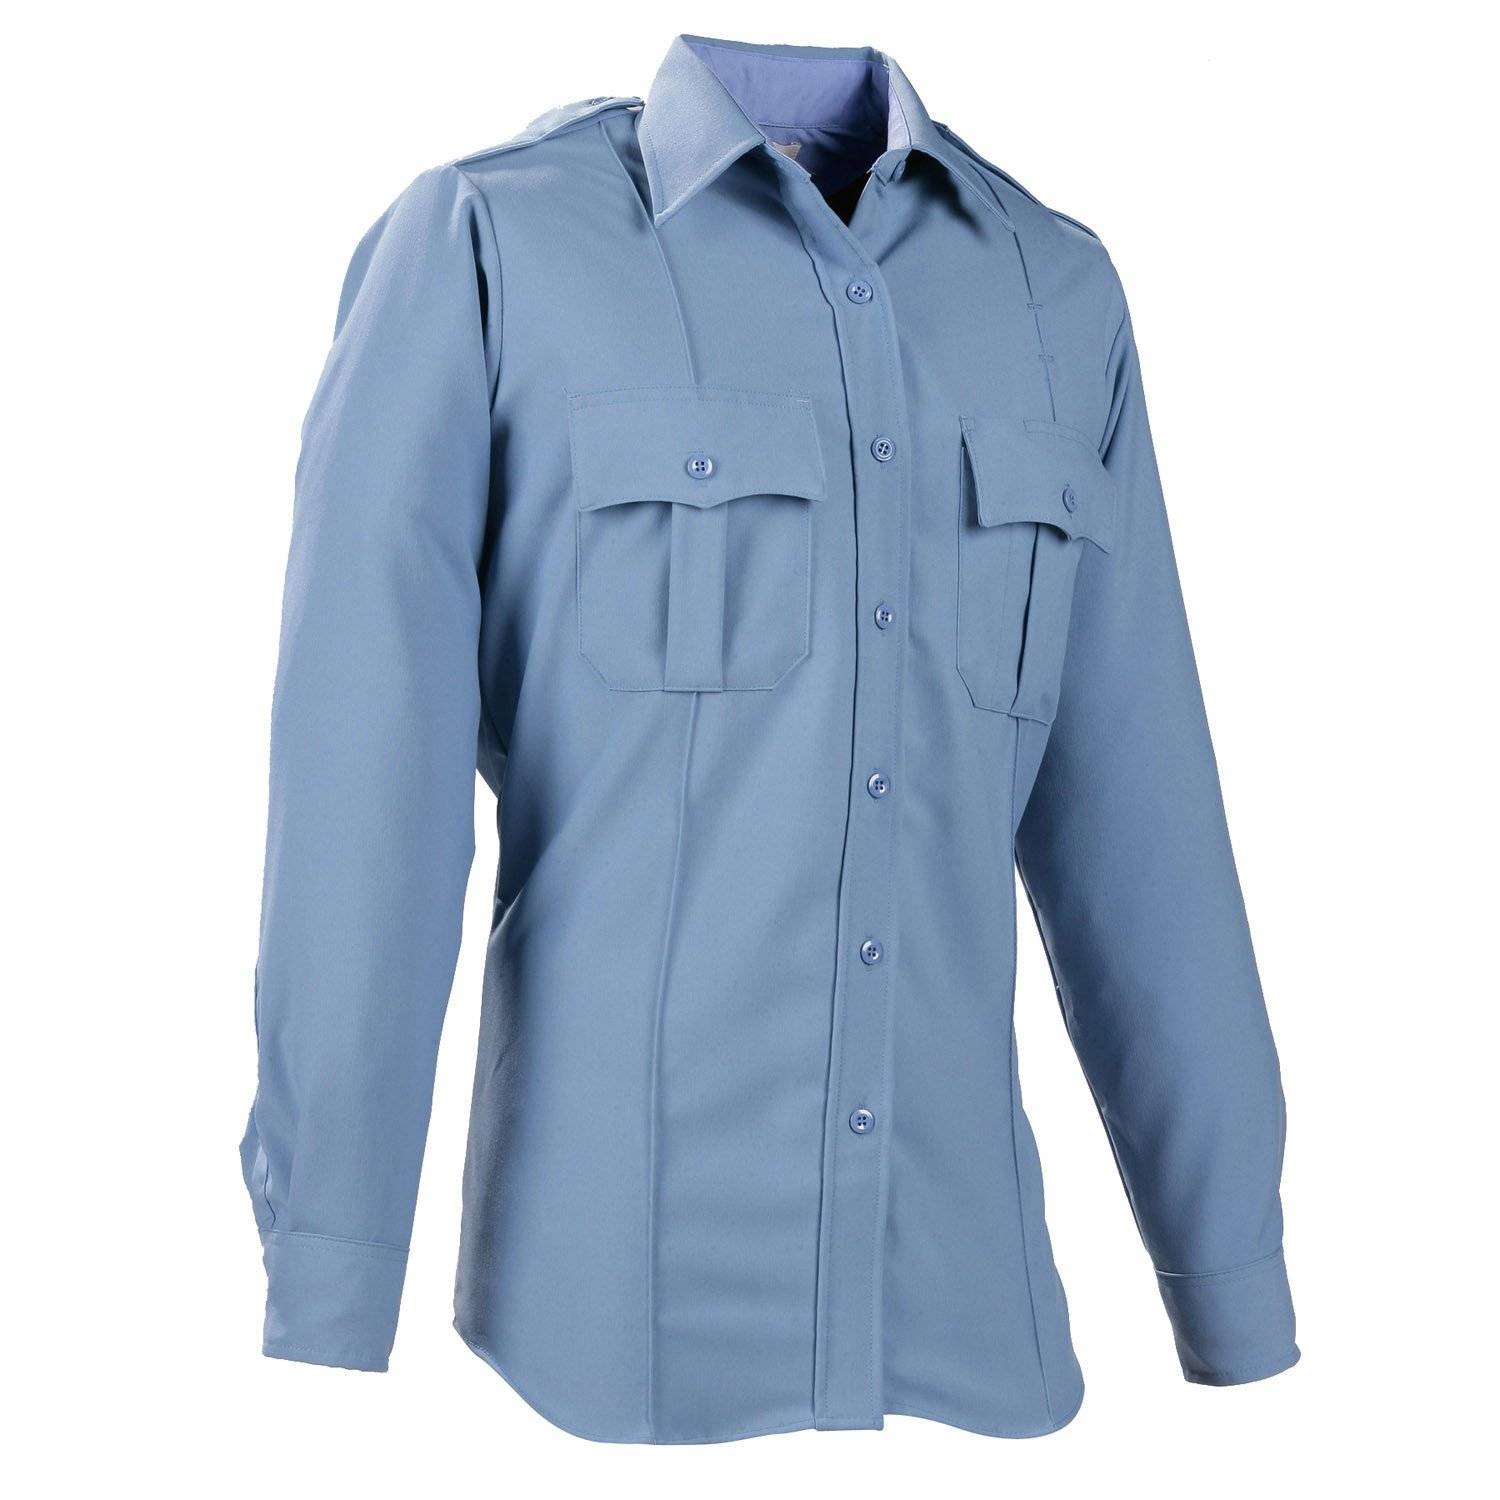 Elbeco DutyMaxx Long Sleeve Shirt